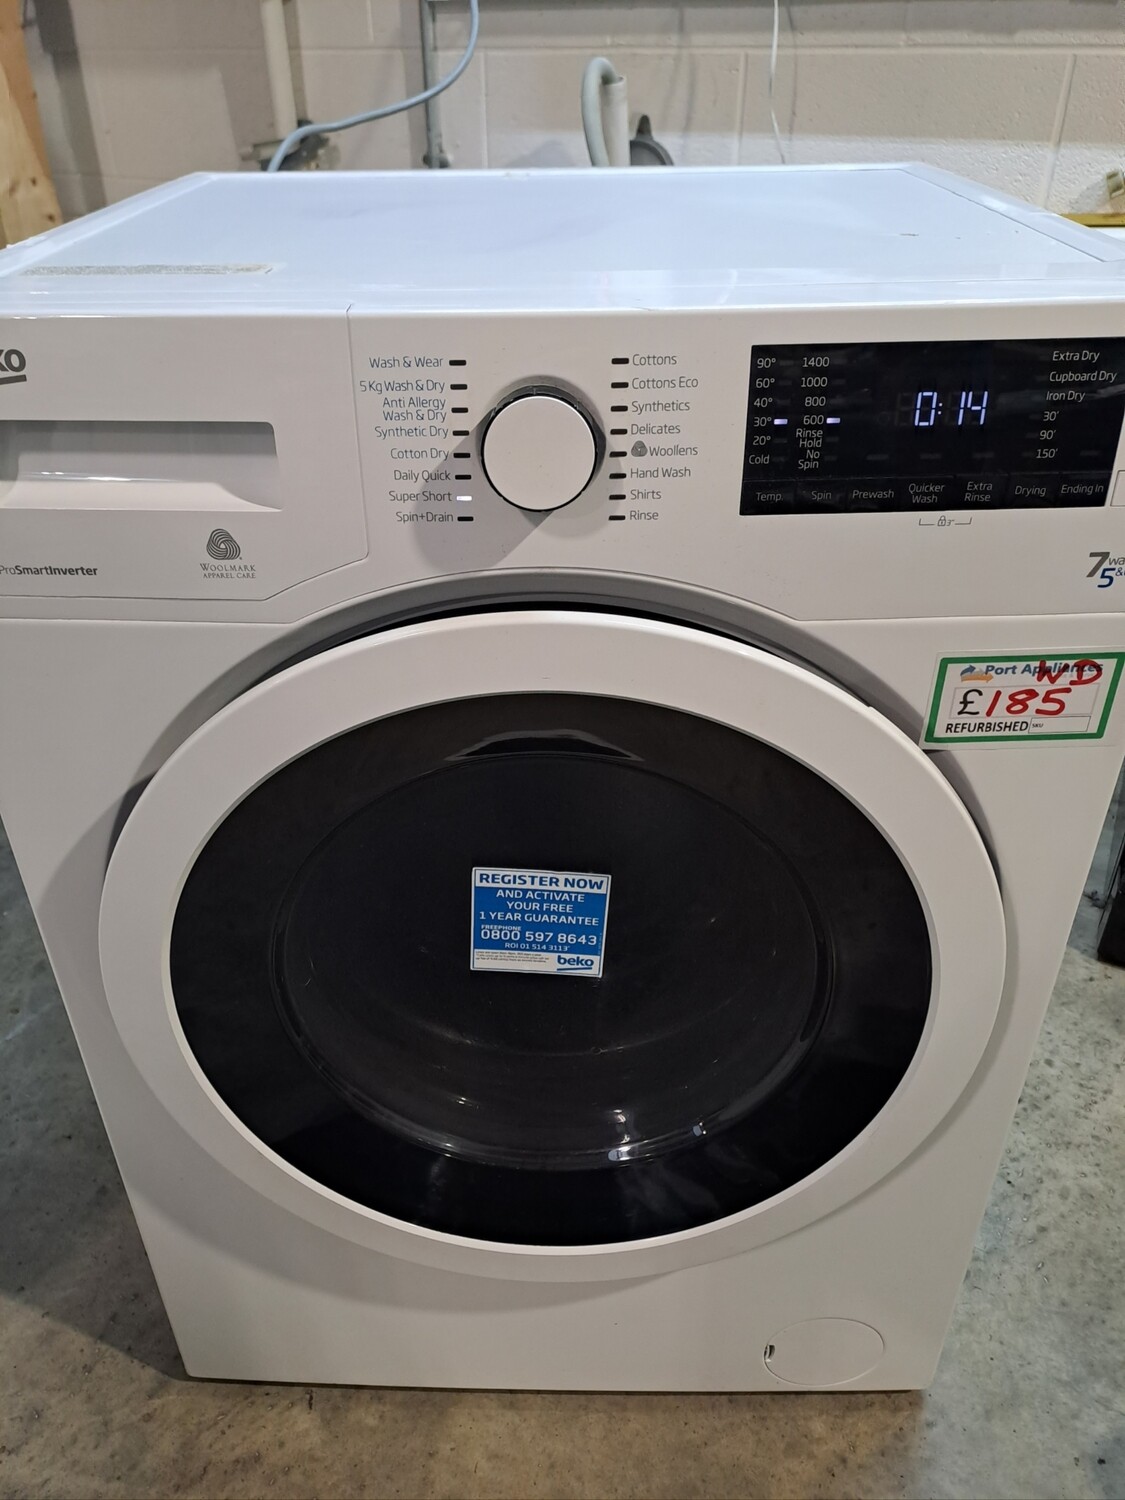 Beko WDR7543121W 7kg Load 1400 Spin Washing Machine Washer Dryer - White - Refurbished - 6 Month Guarantee